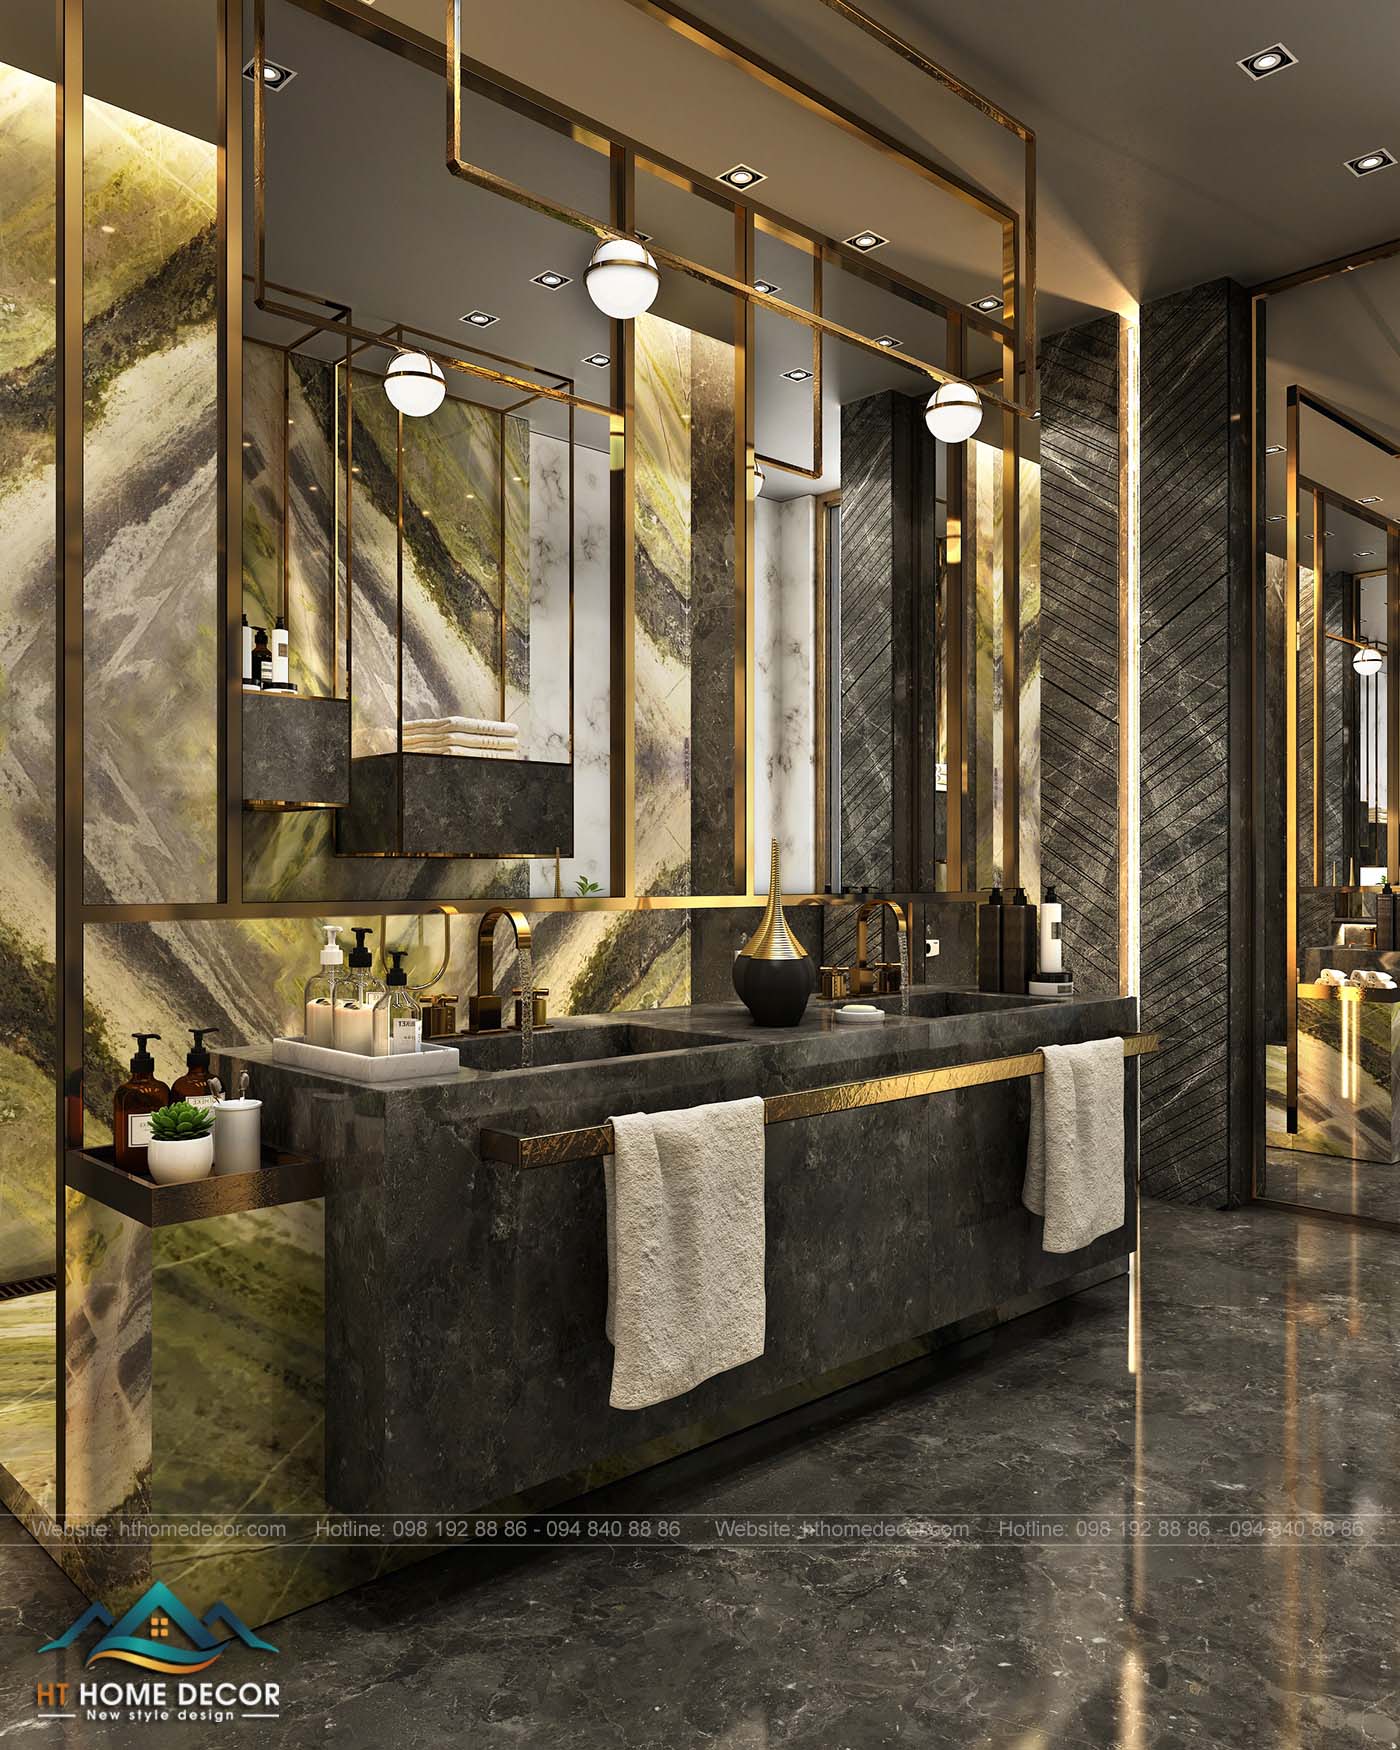 Gam màu xám đen cùng những họa tiết vàng đồng đem lại một không gian hoàn toàn khác biệt so với gian phòng trên.